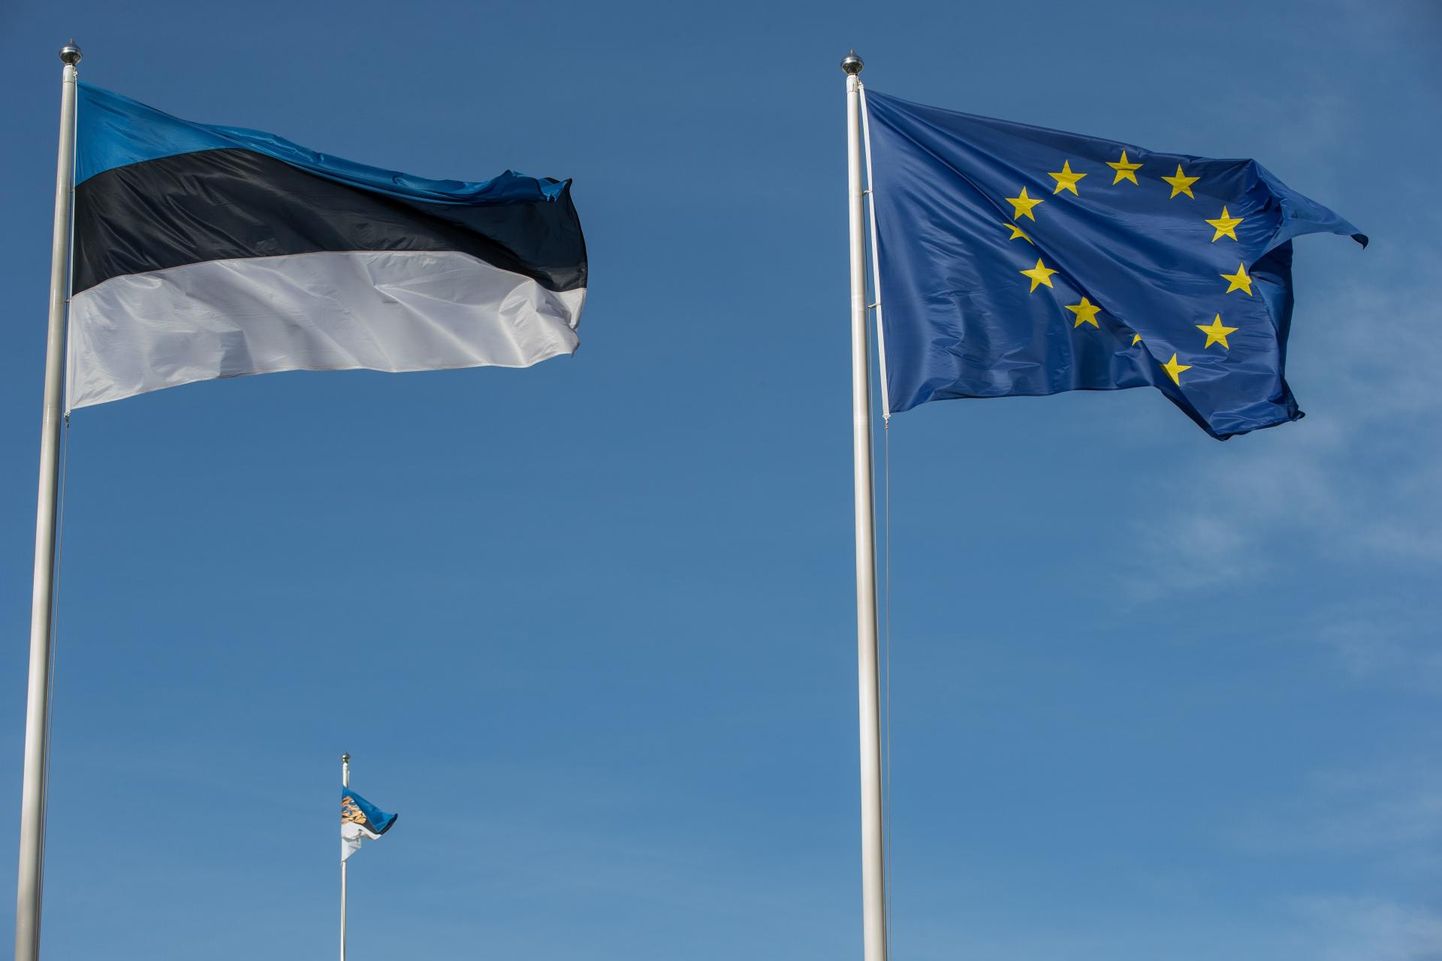 Euroopa Liit, Eesti Vabariik. Lipp, lipud. 12MAR14